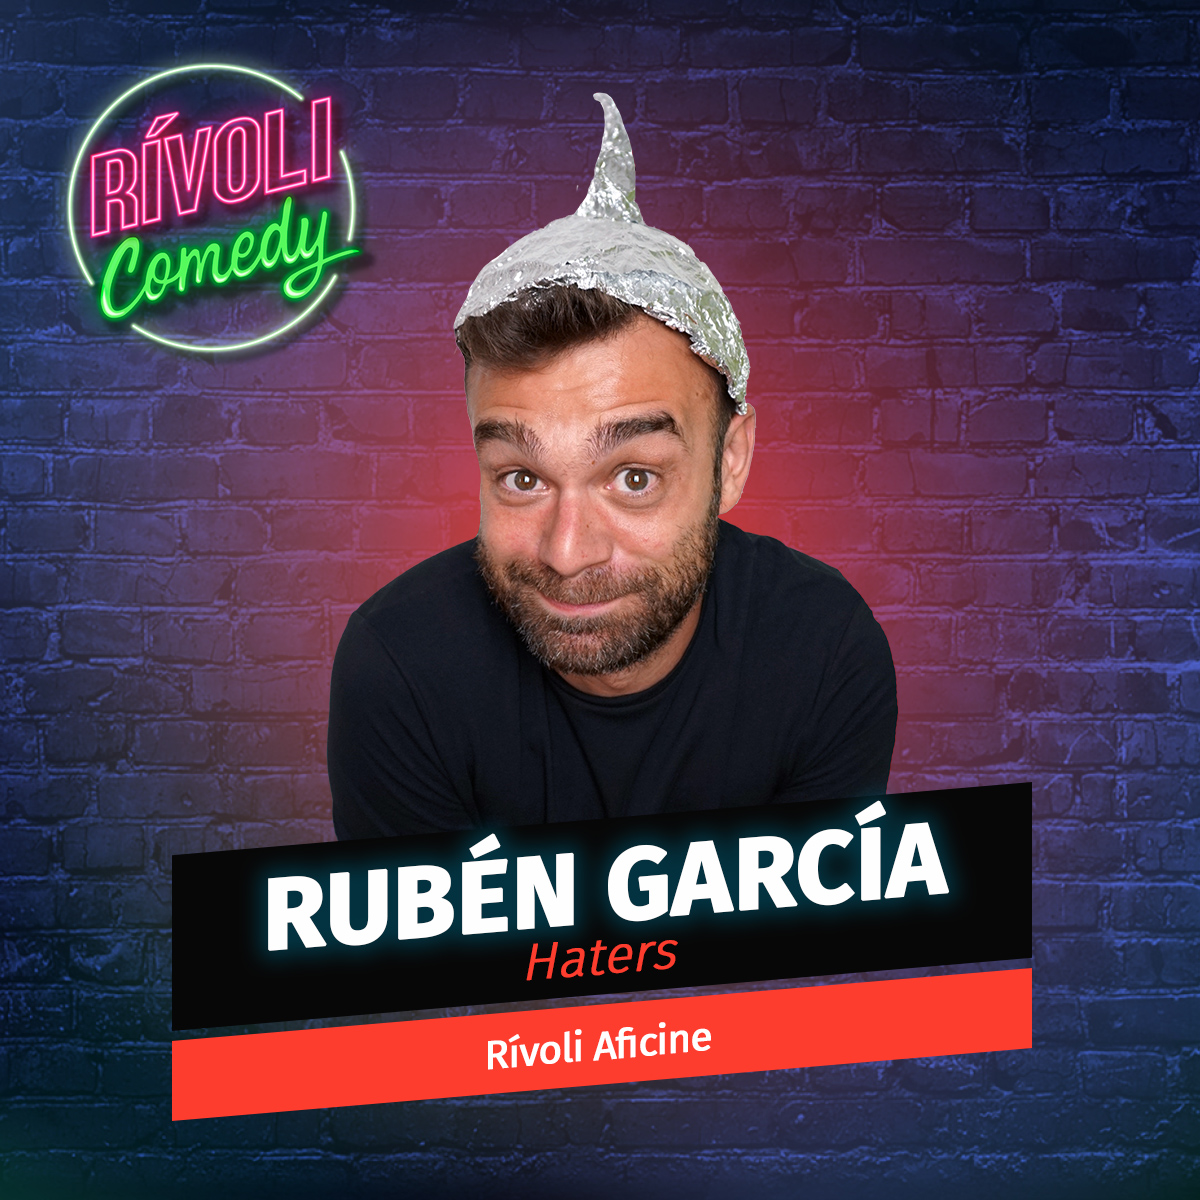 Rubén García | Haters · 3 de junio · Palma de Mallorca (Rívoli Comedy)